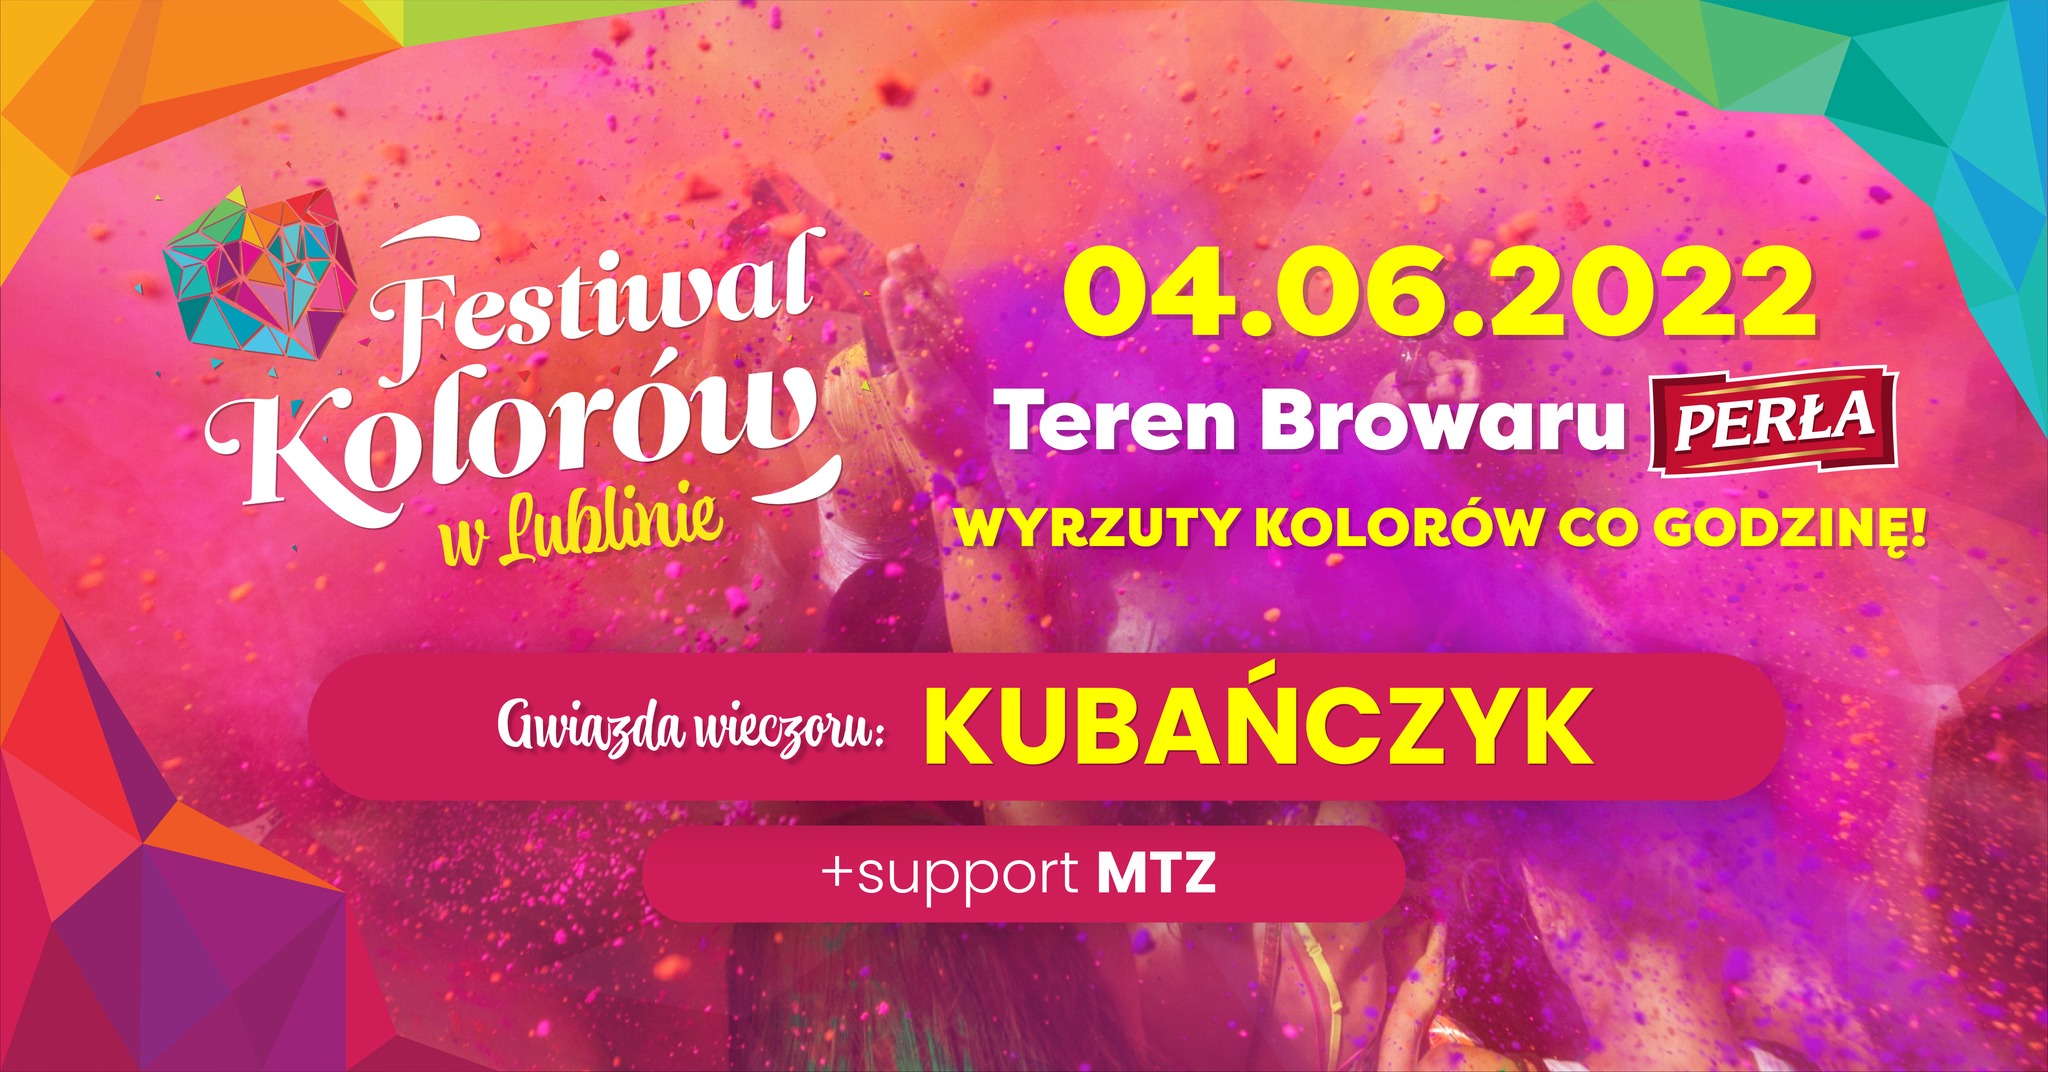 Oficjalny Festiwal Kolorów odbędzie się w Lublinie. Mamy dla Was zestawy słodyczy od MAOAM i kolory Holi